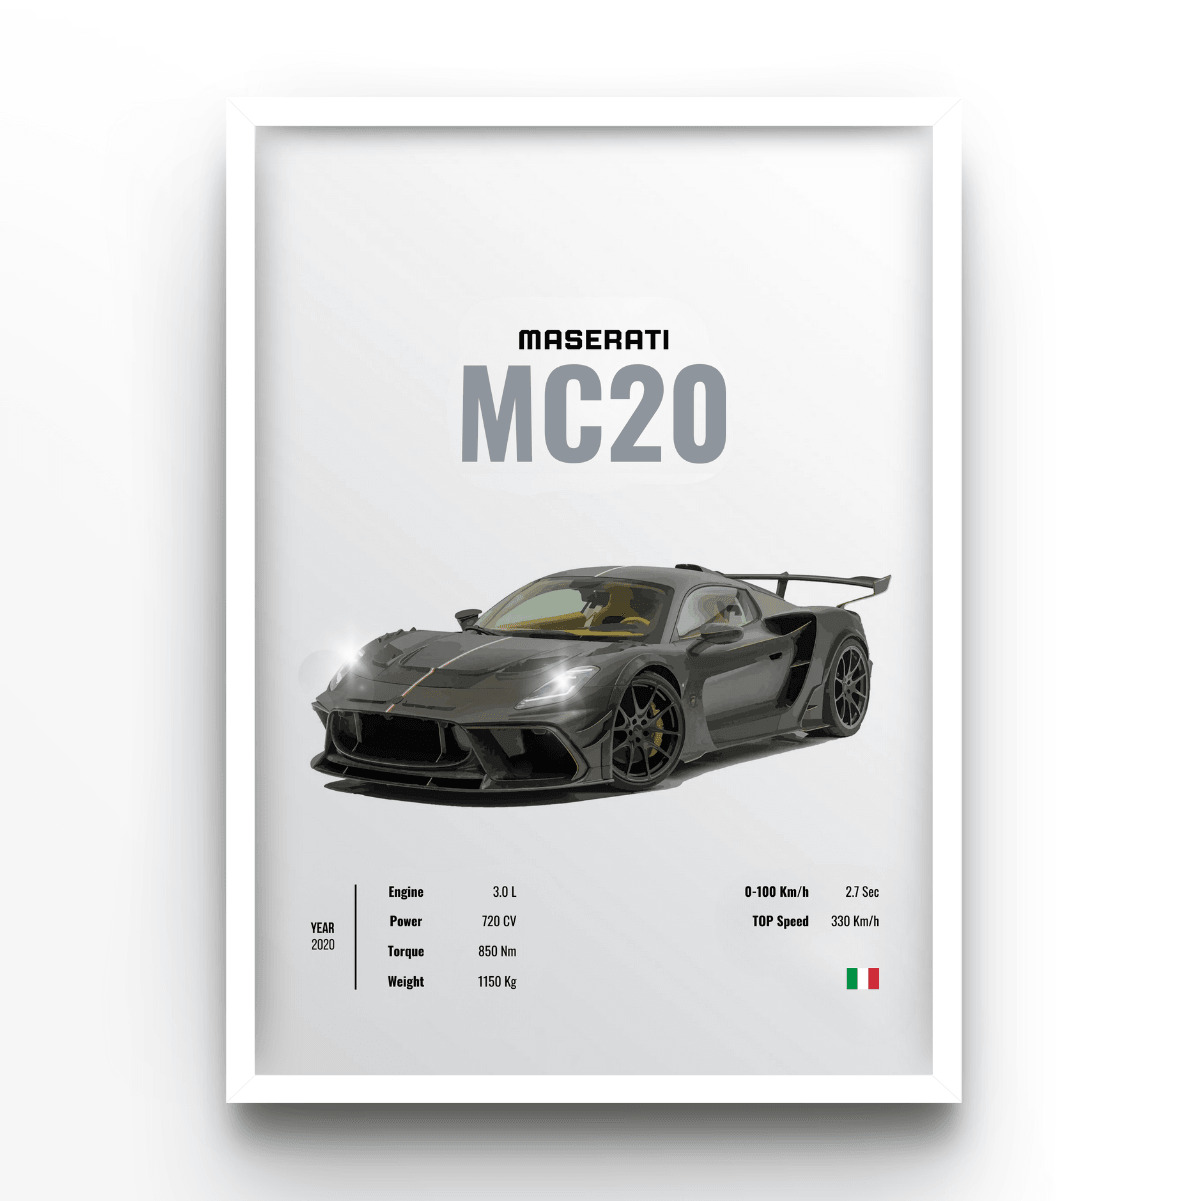 Maserati MC20 - A4, A3, A2 Posters Base - Poster Print Shop / Art Prints / PostersBase